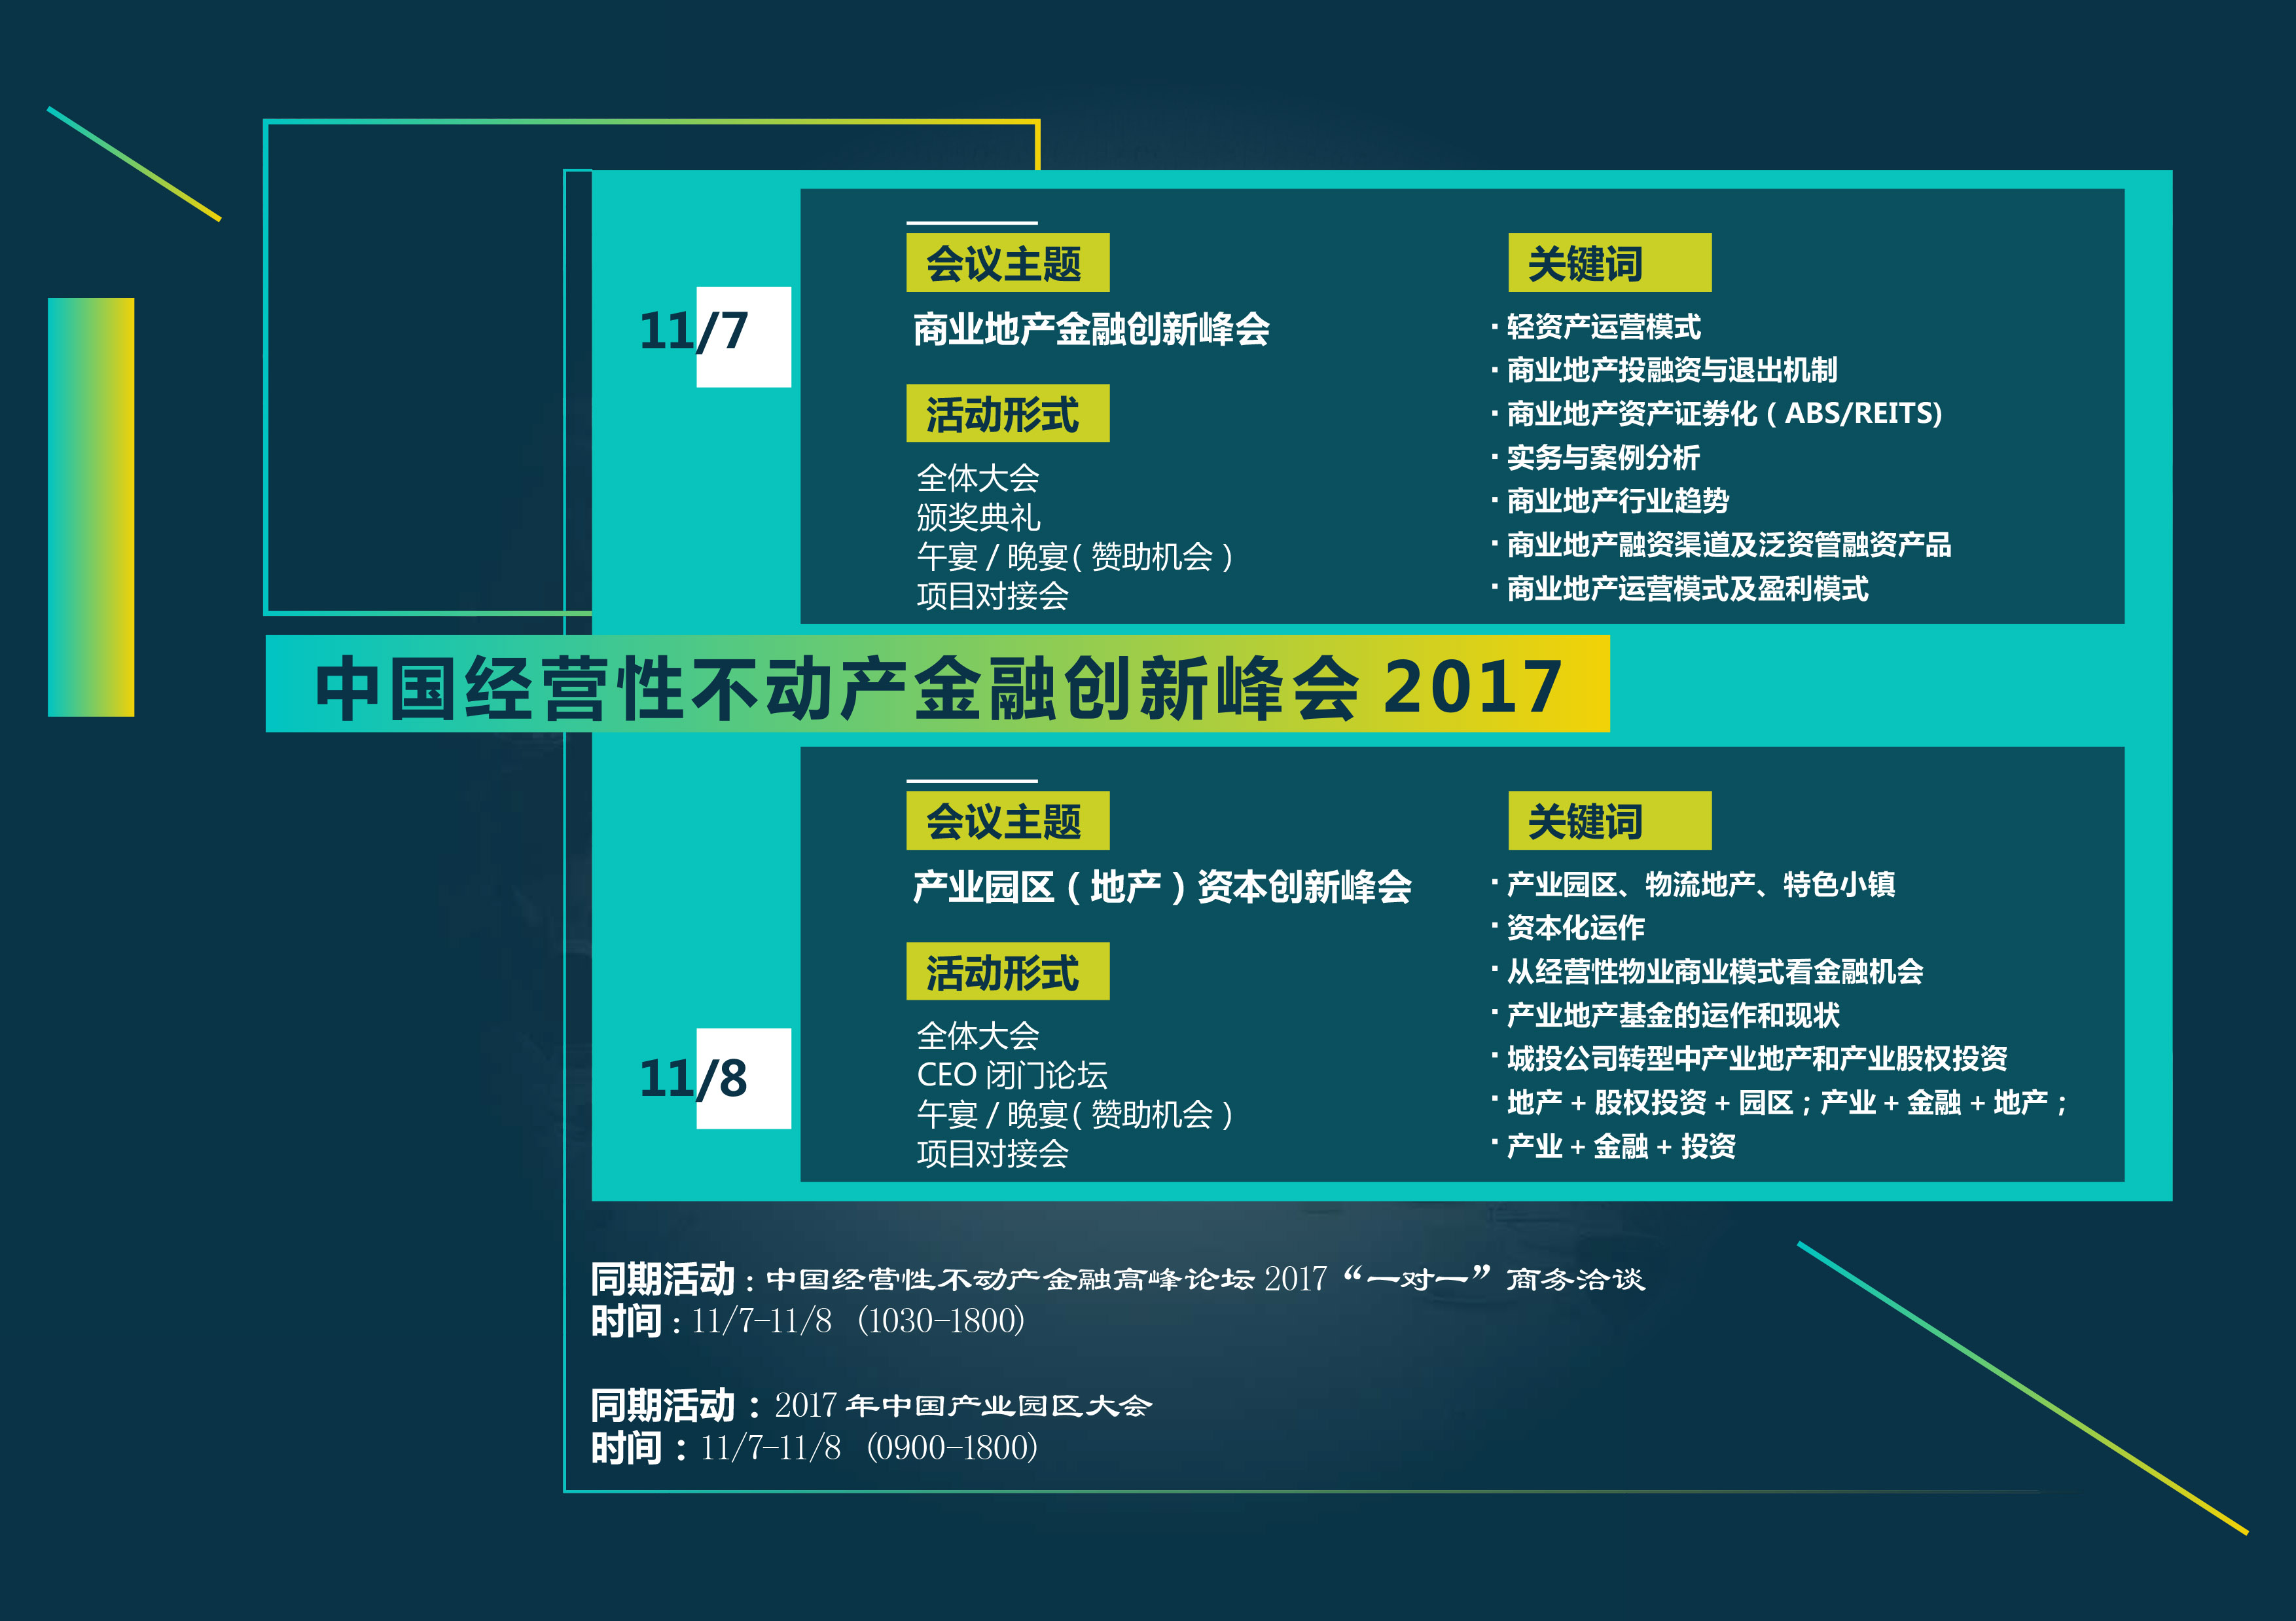 中国经营性不动产金融创新峰会 REF2017